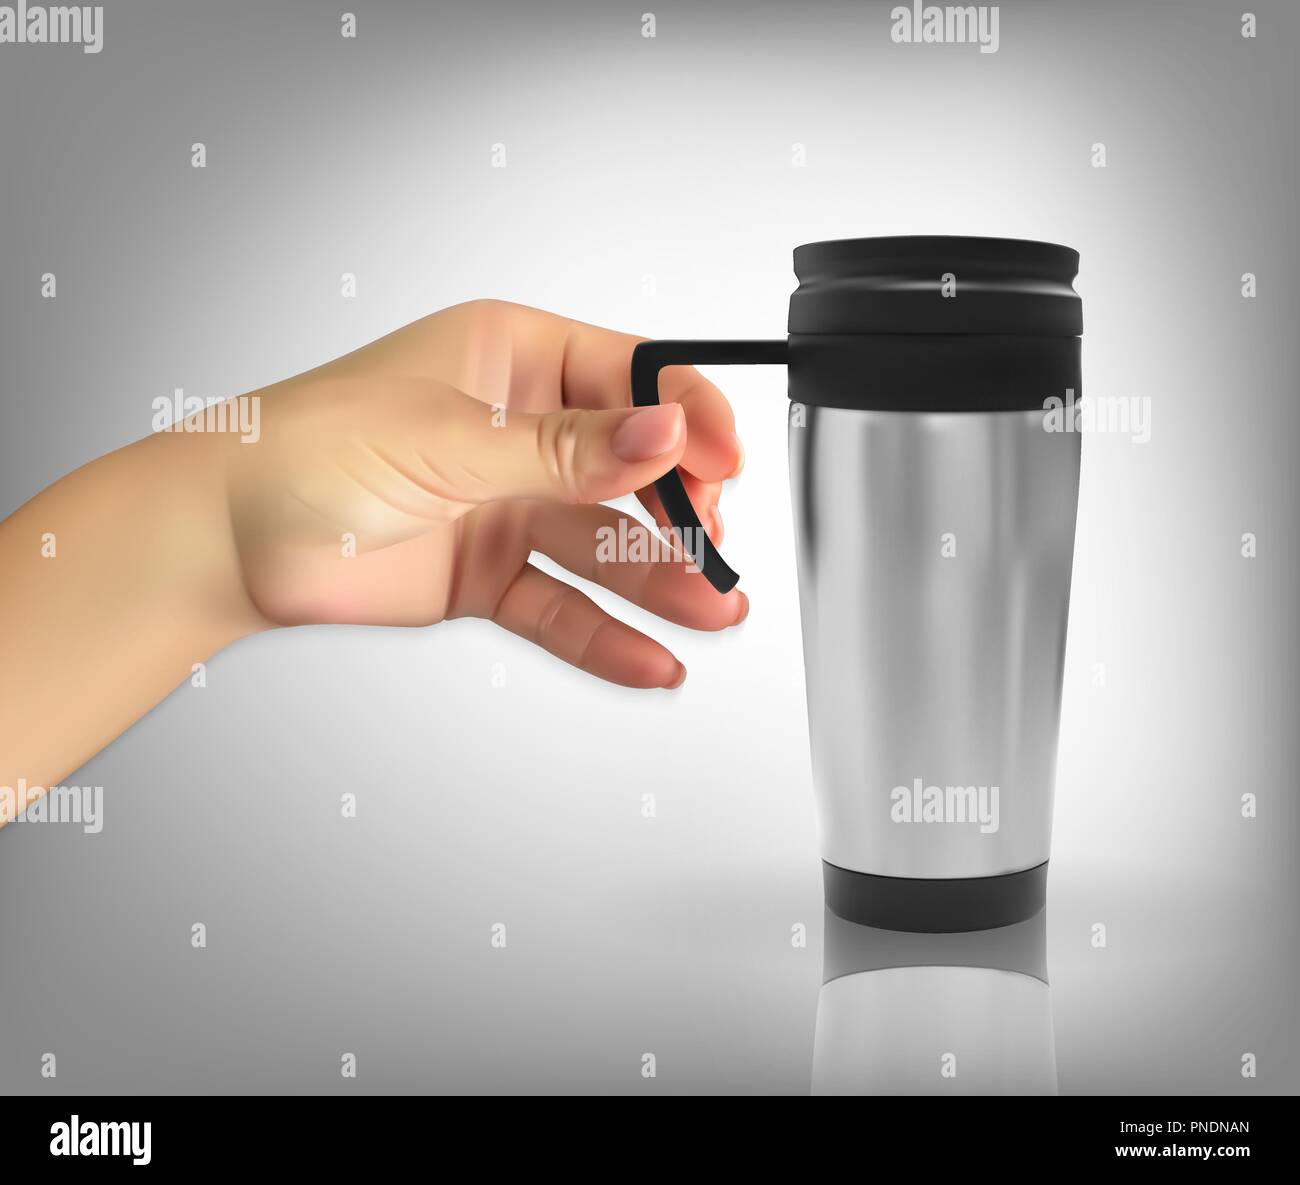 Uomo di mano naturalistico detiene il modello tridimensionale realistico dei thermos cup. Illustrazione Vettoriale Illustrazione Vettoriale